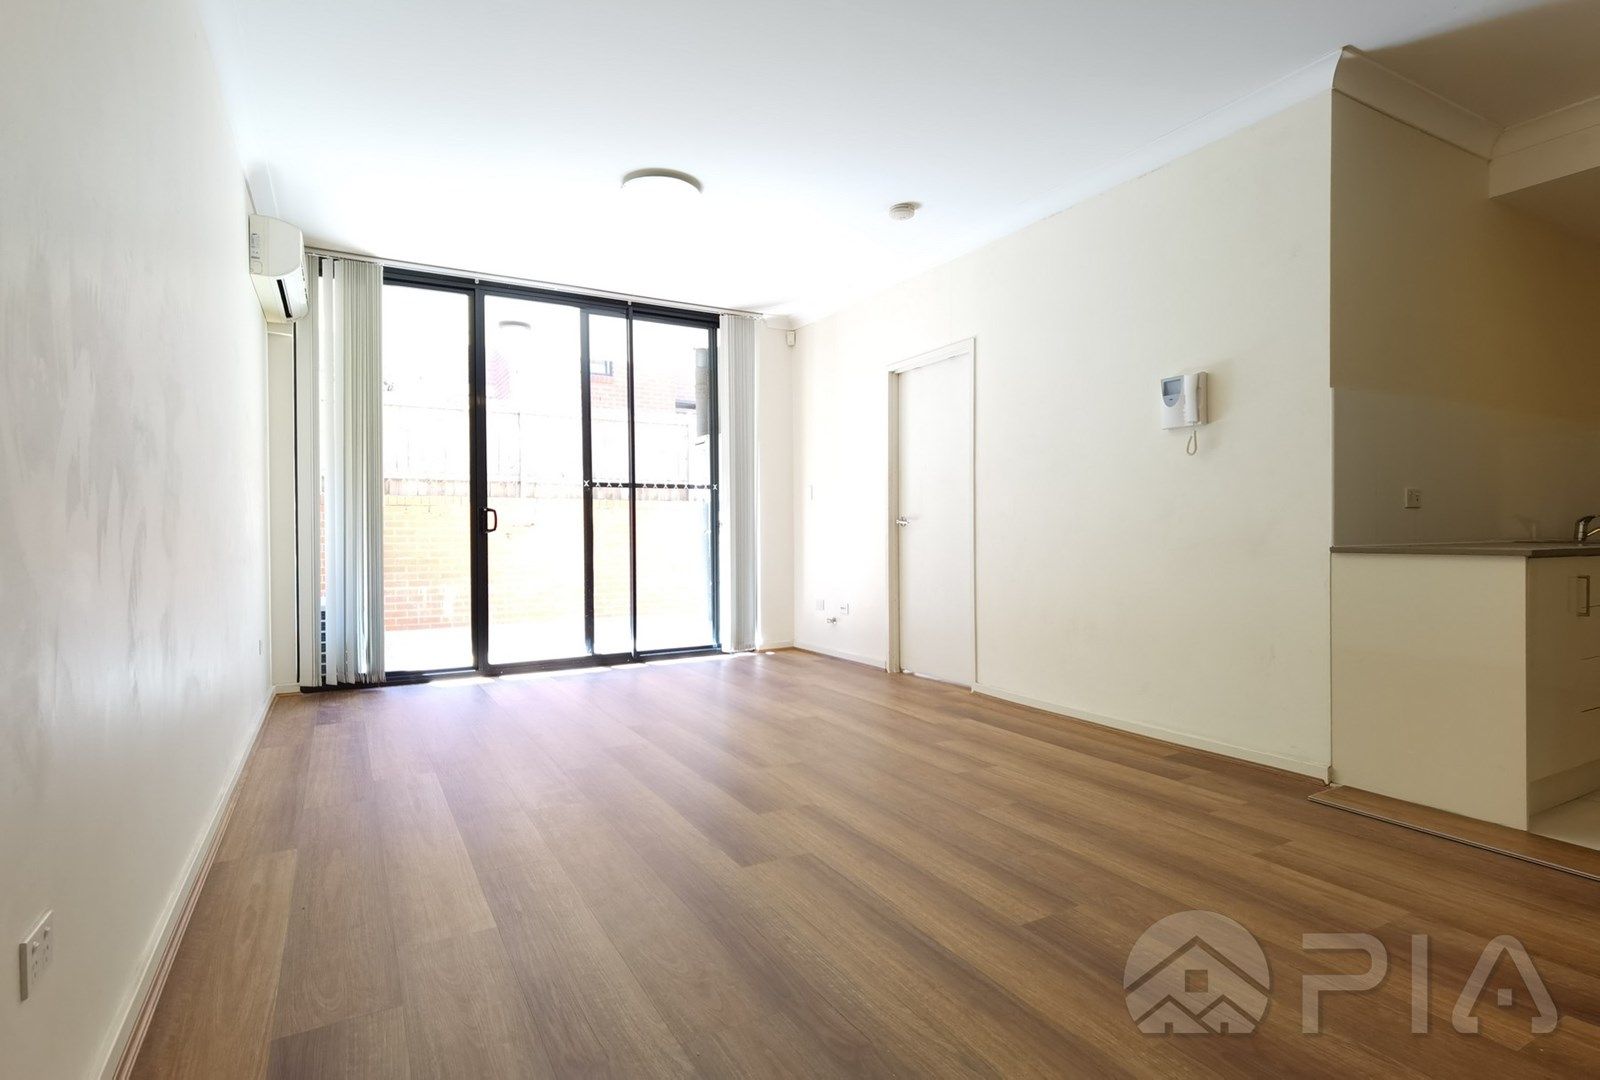 2 bedrooms Apartment / Unit / Flat in 34/195-199 William St GRANVILLE NSW, 2142